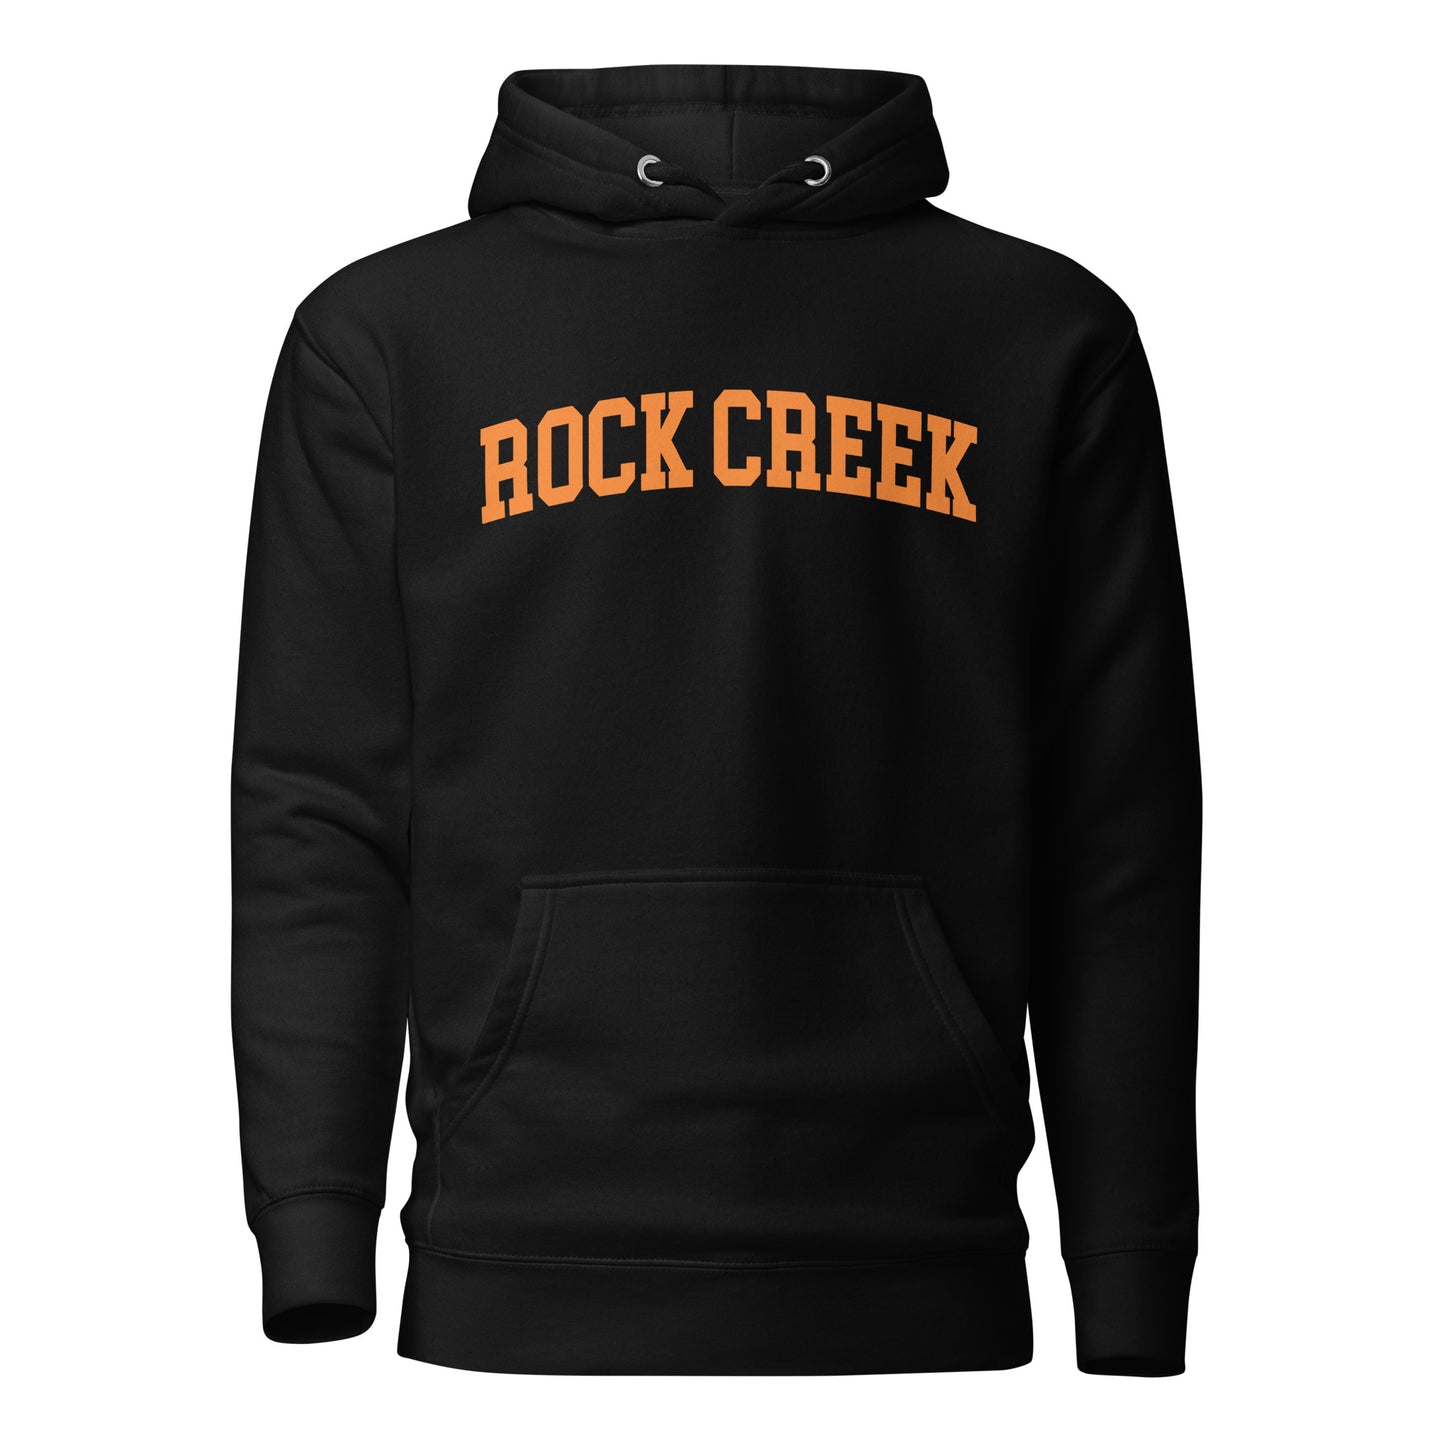 ROCK CREEK HOODIE